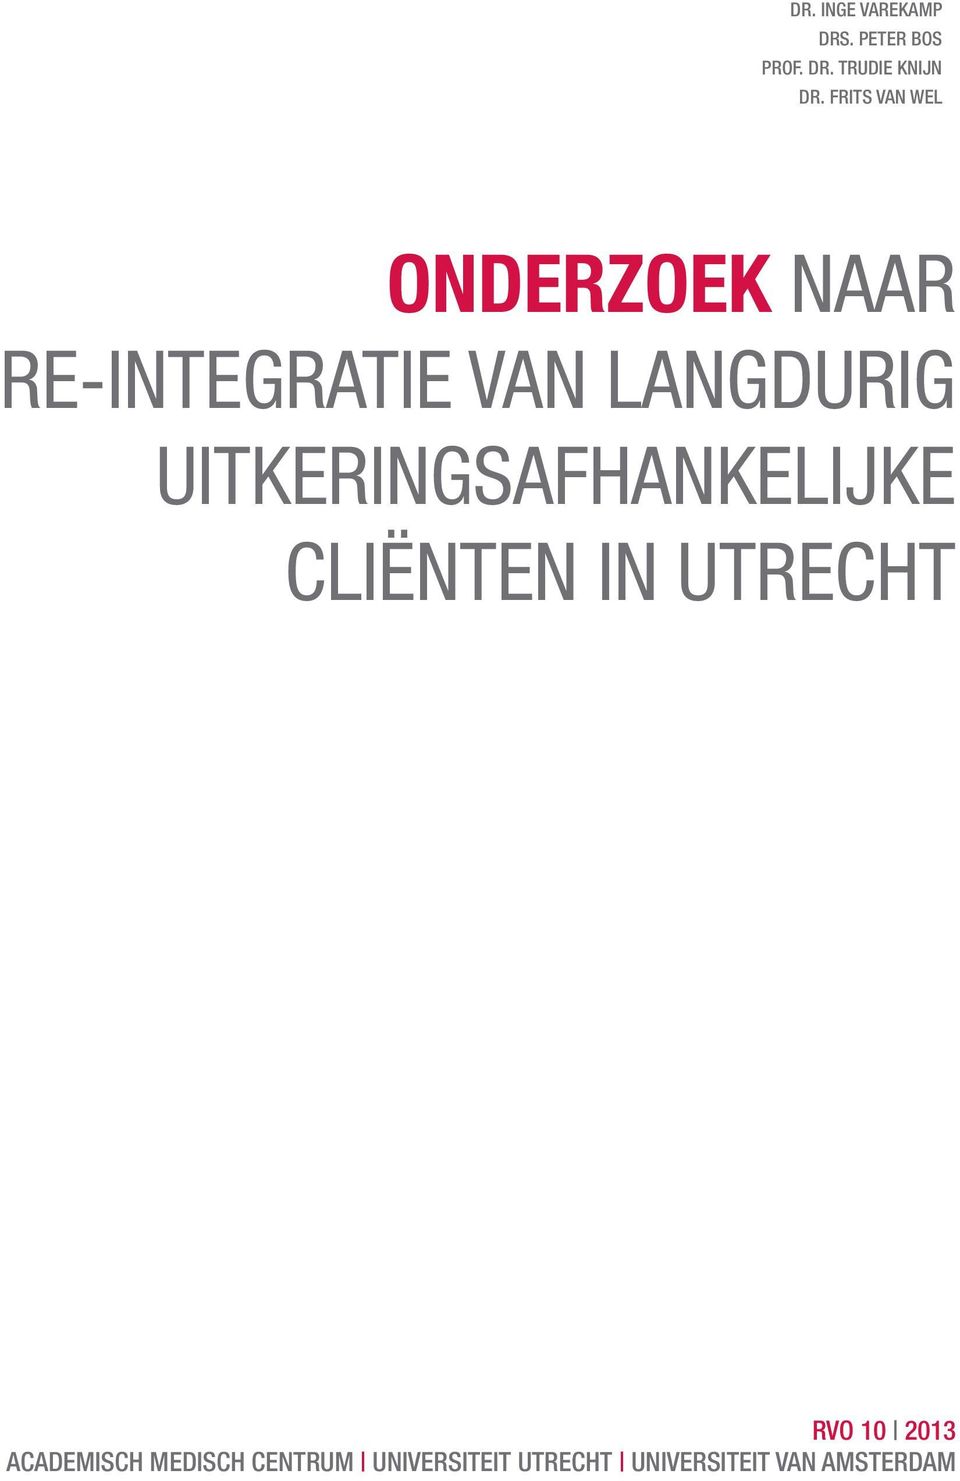 uitkeringsafhankelijke cliënten in Utrecht RVO 10 2013